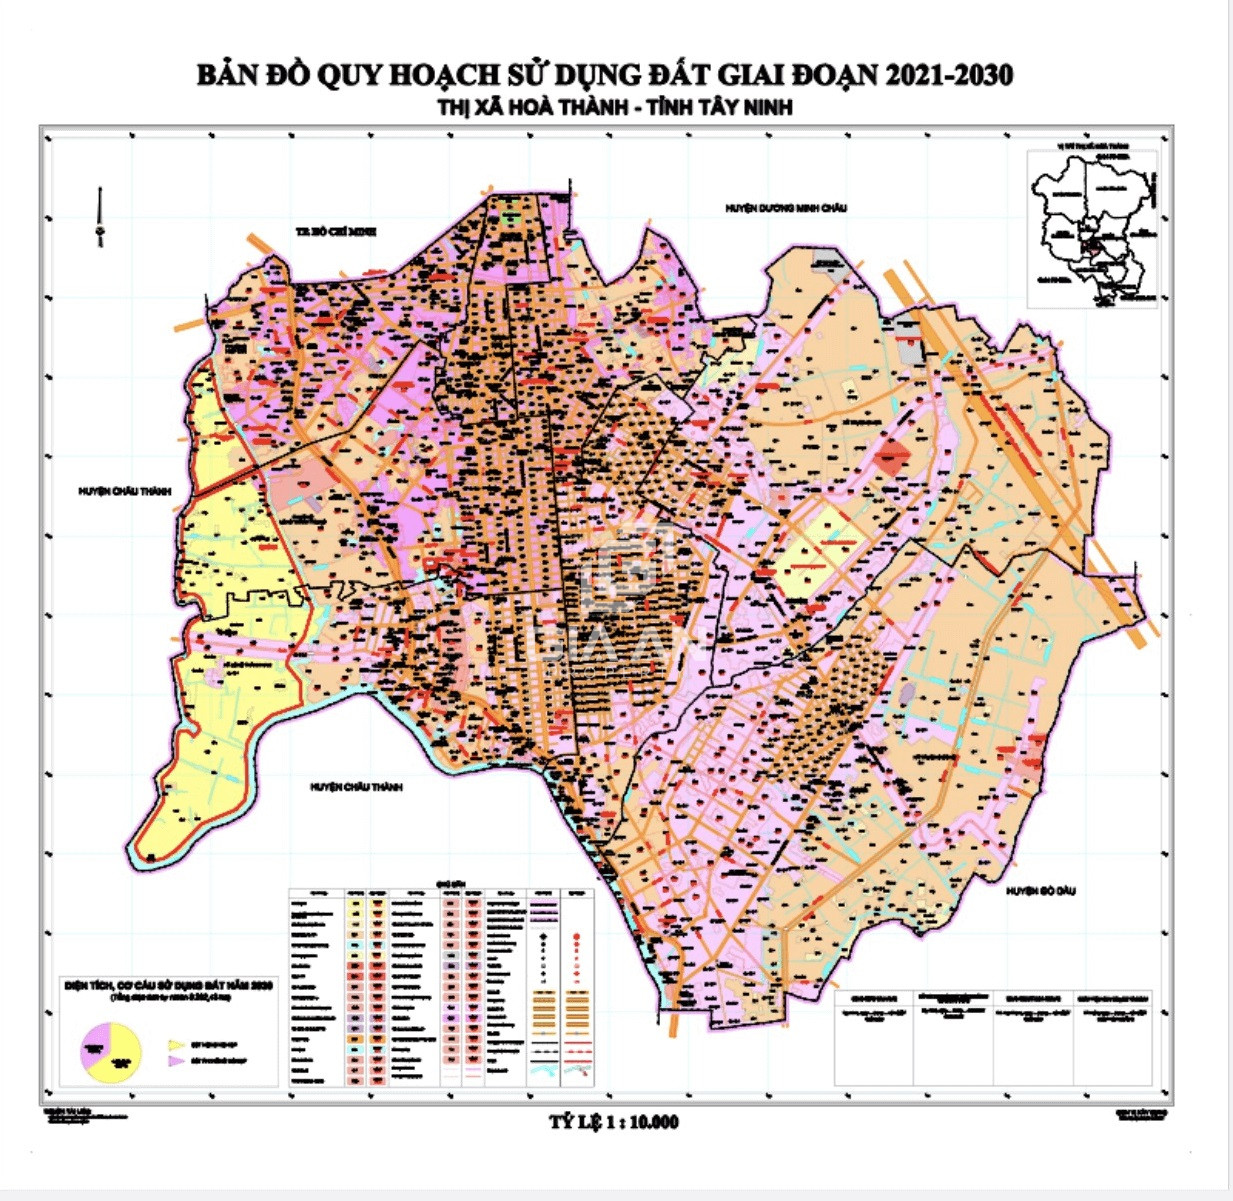 Bản đồ quy hoạch sử dụng đất thị xã Hoà Thành